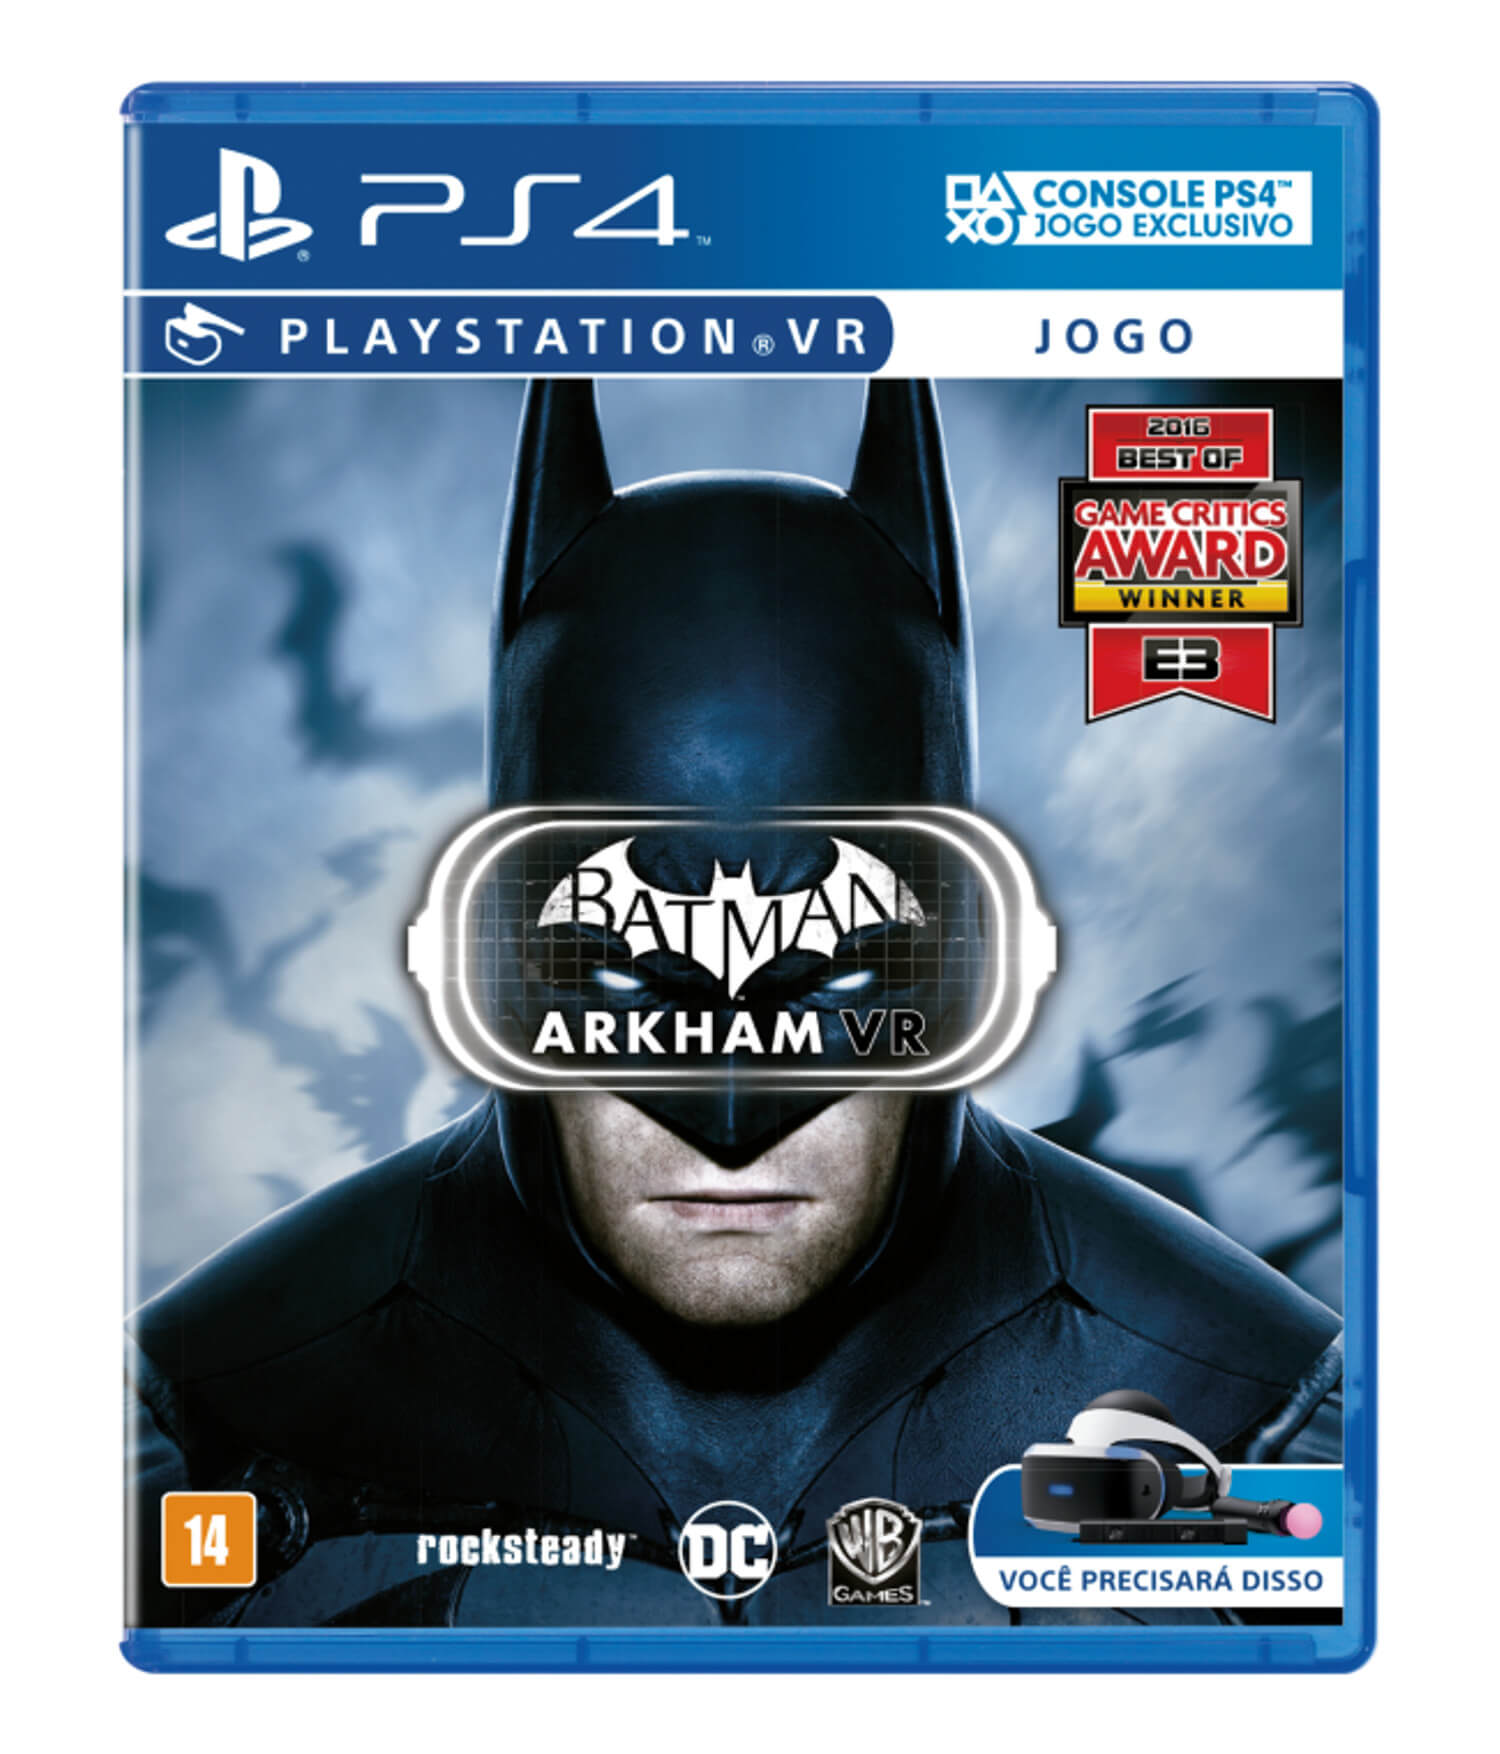 Caixa do Batman Arkham VR